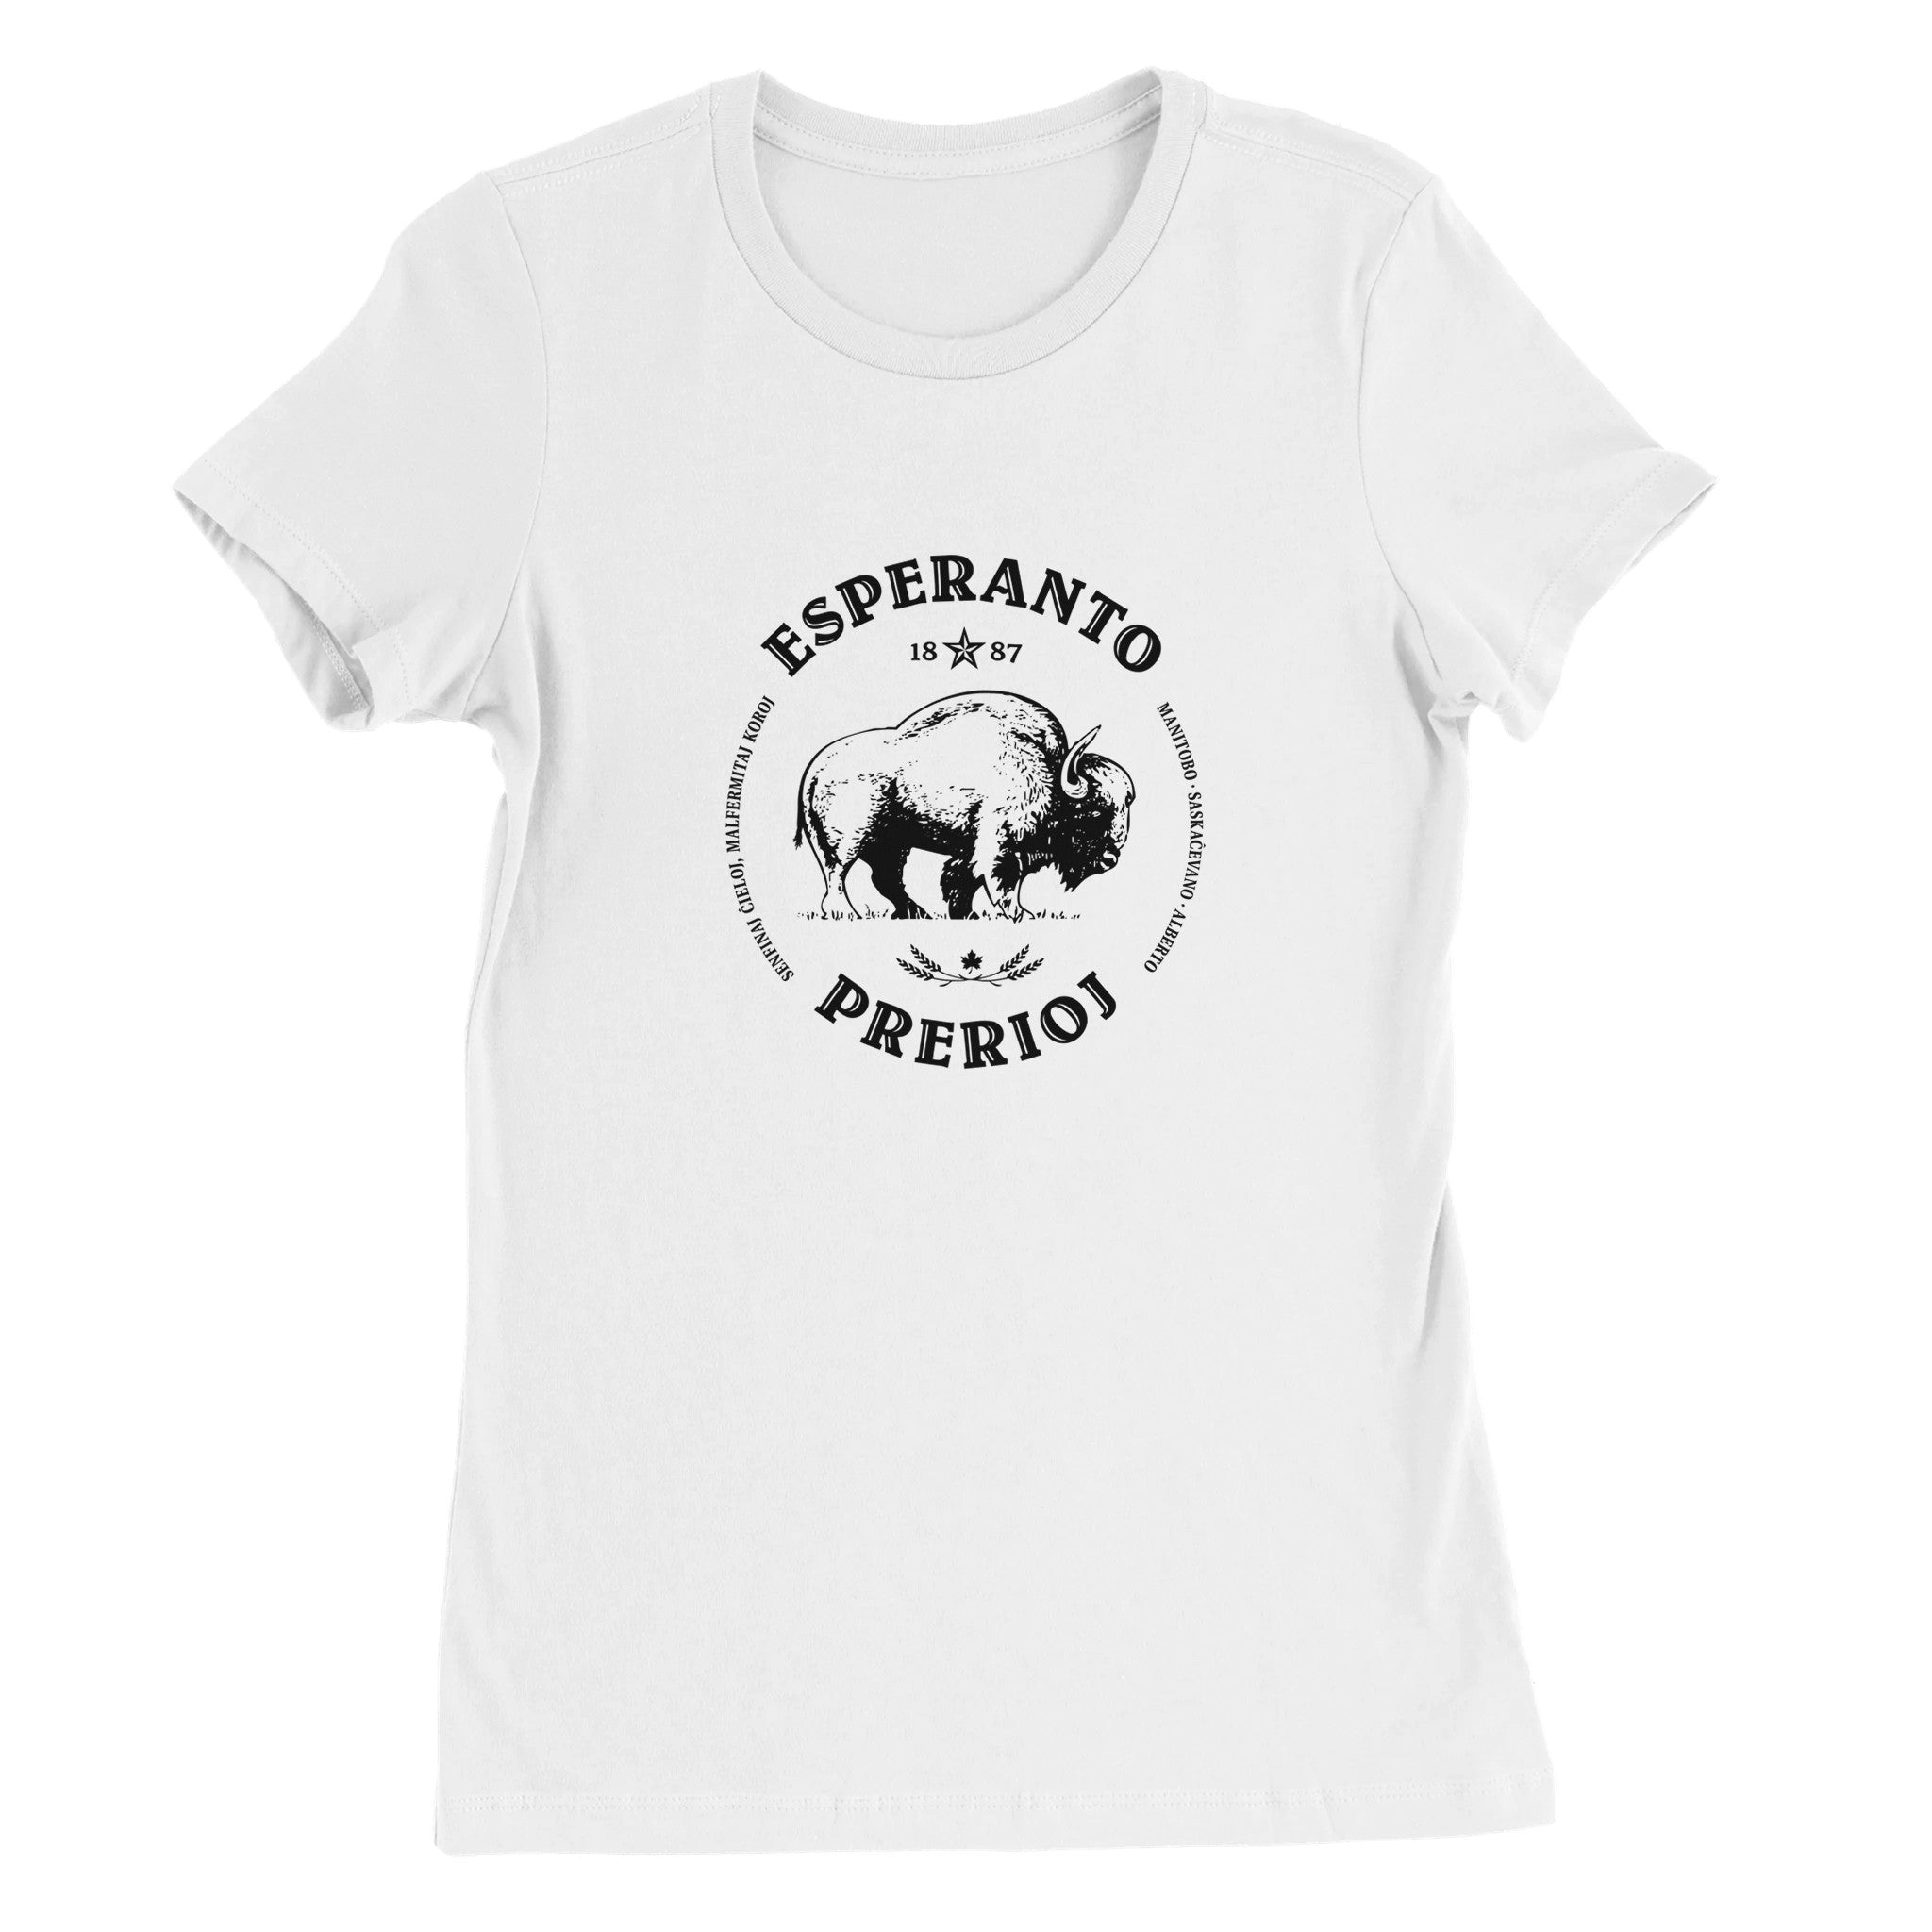 Esperanto Prerioj Womens T-shirt